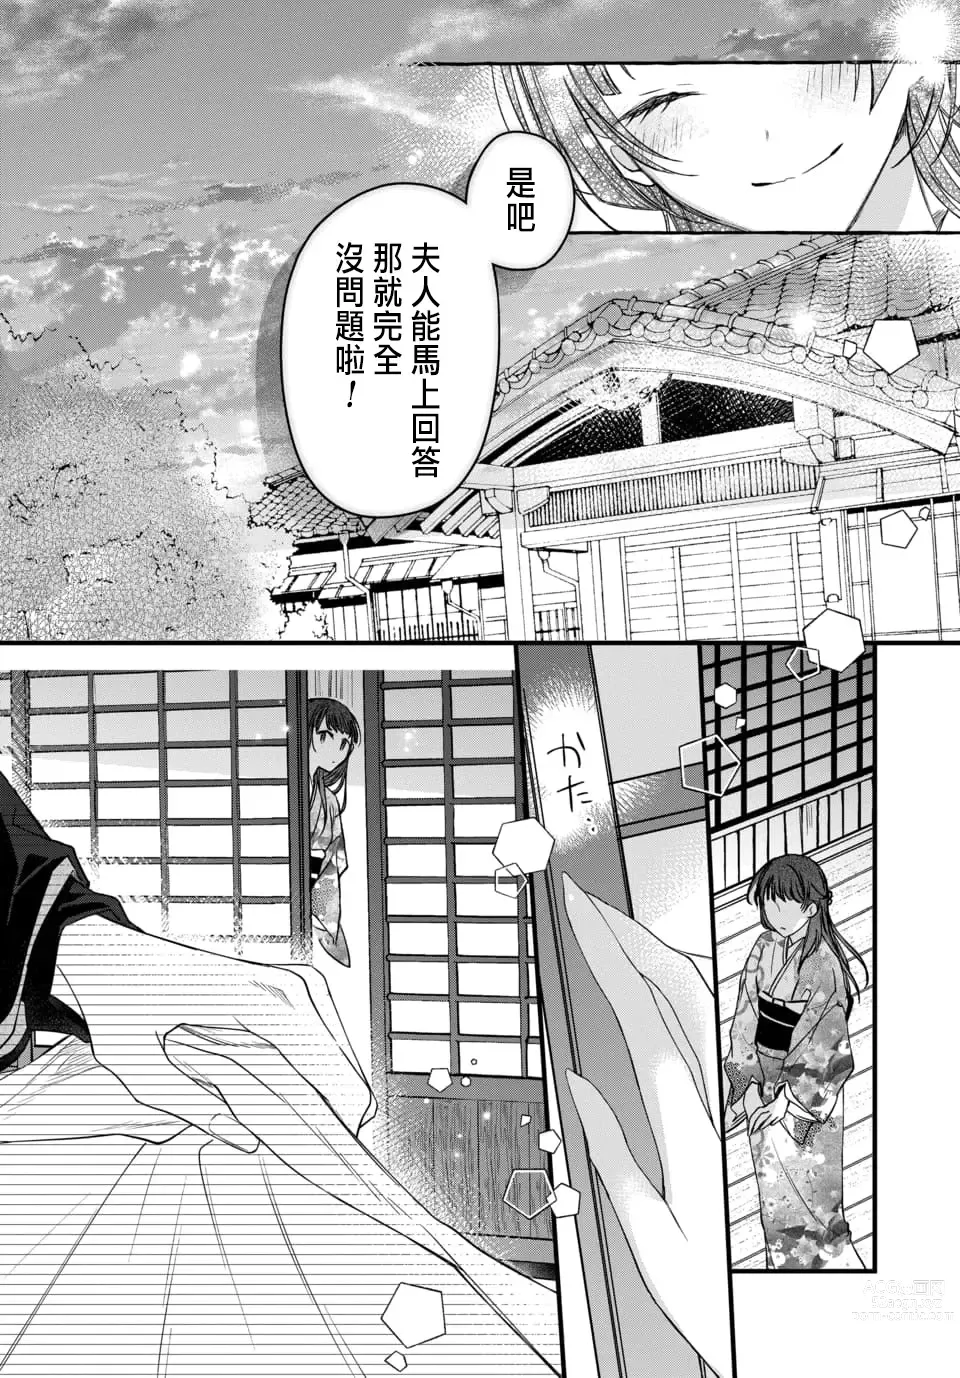 Page 225 of manga Tsuki e no Yomeiri 1-6